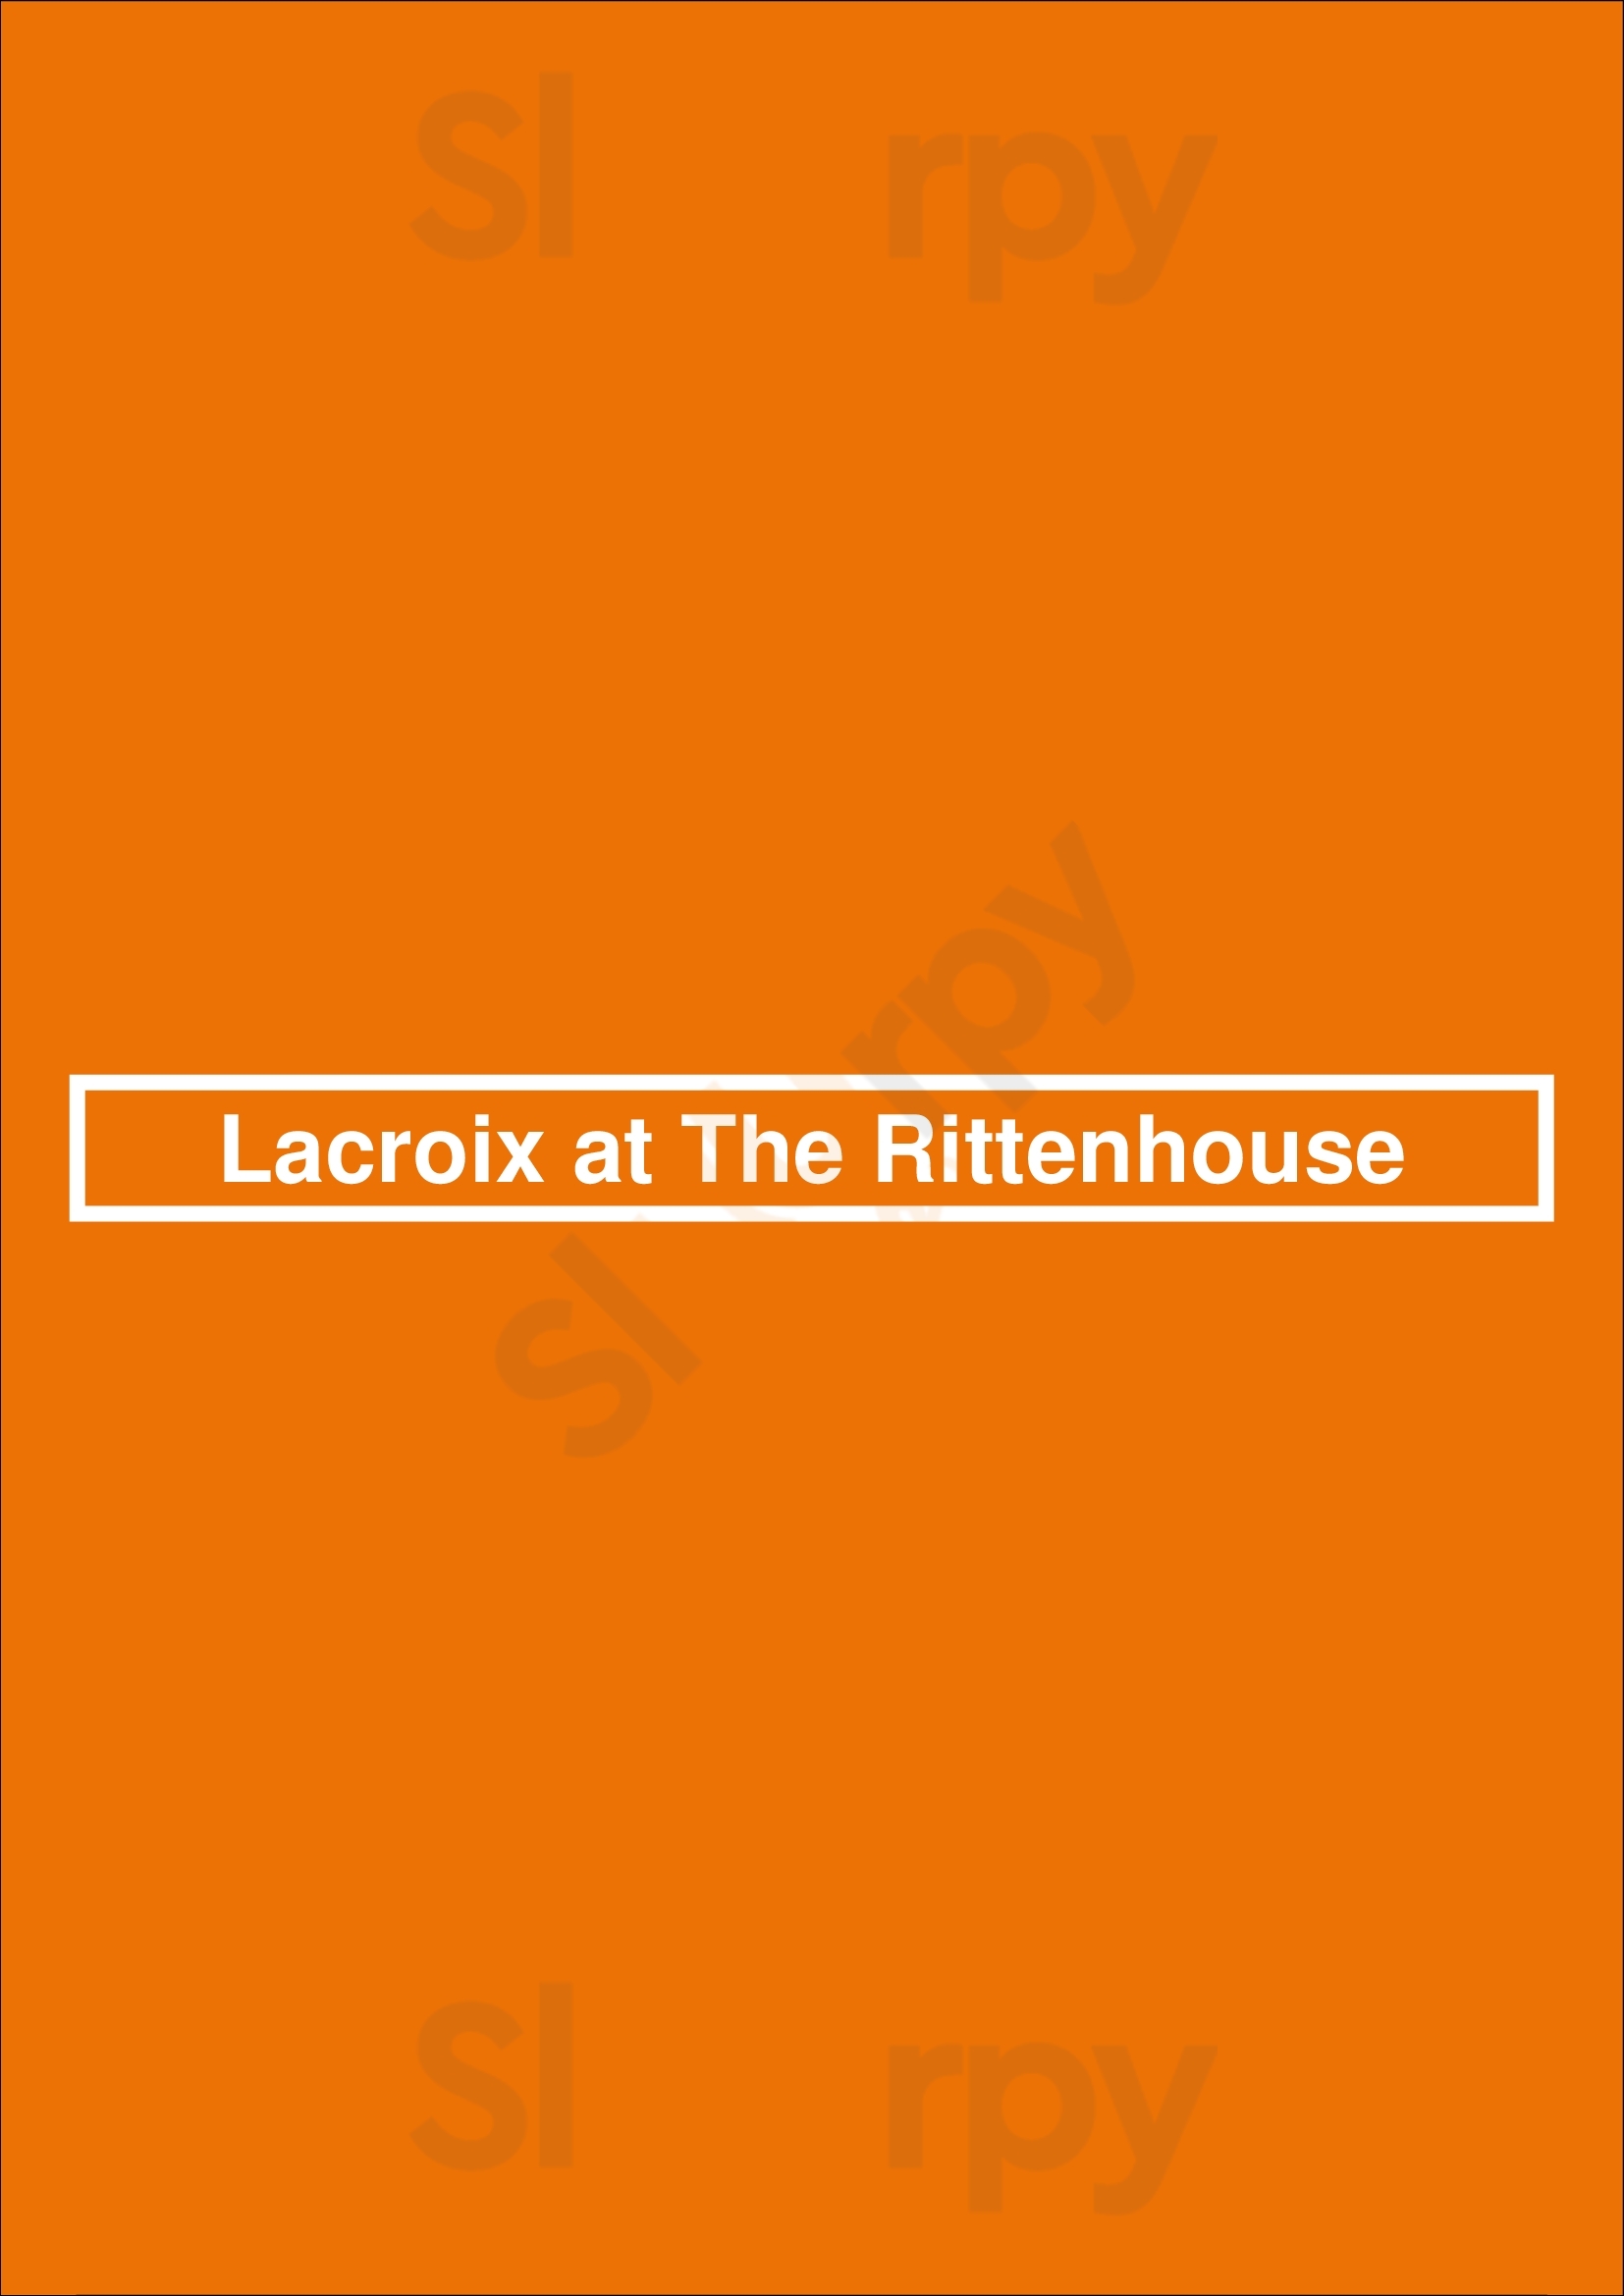 Lacroix At The Rittenhouse Philadelphia Menu - 1